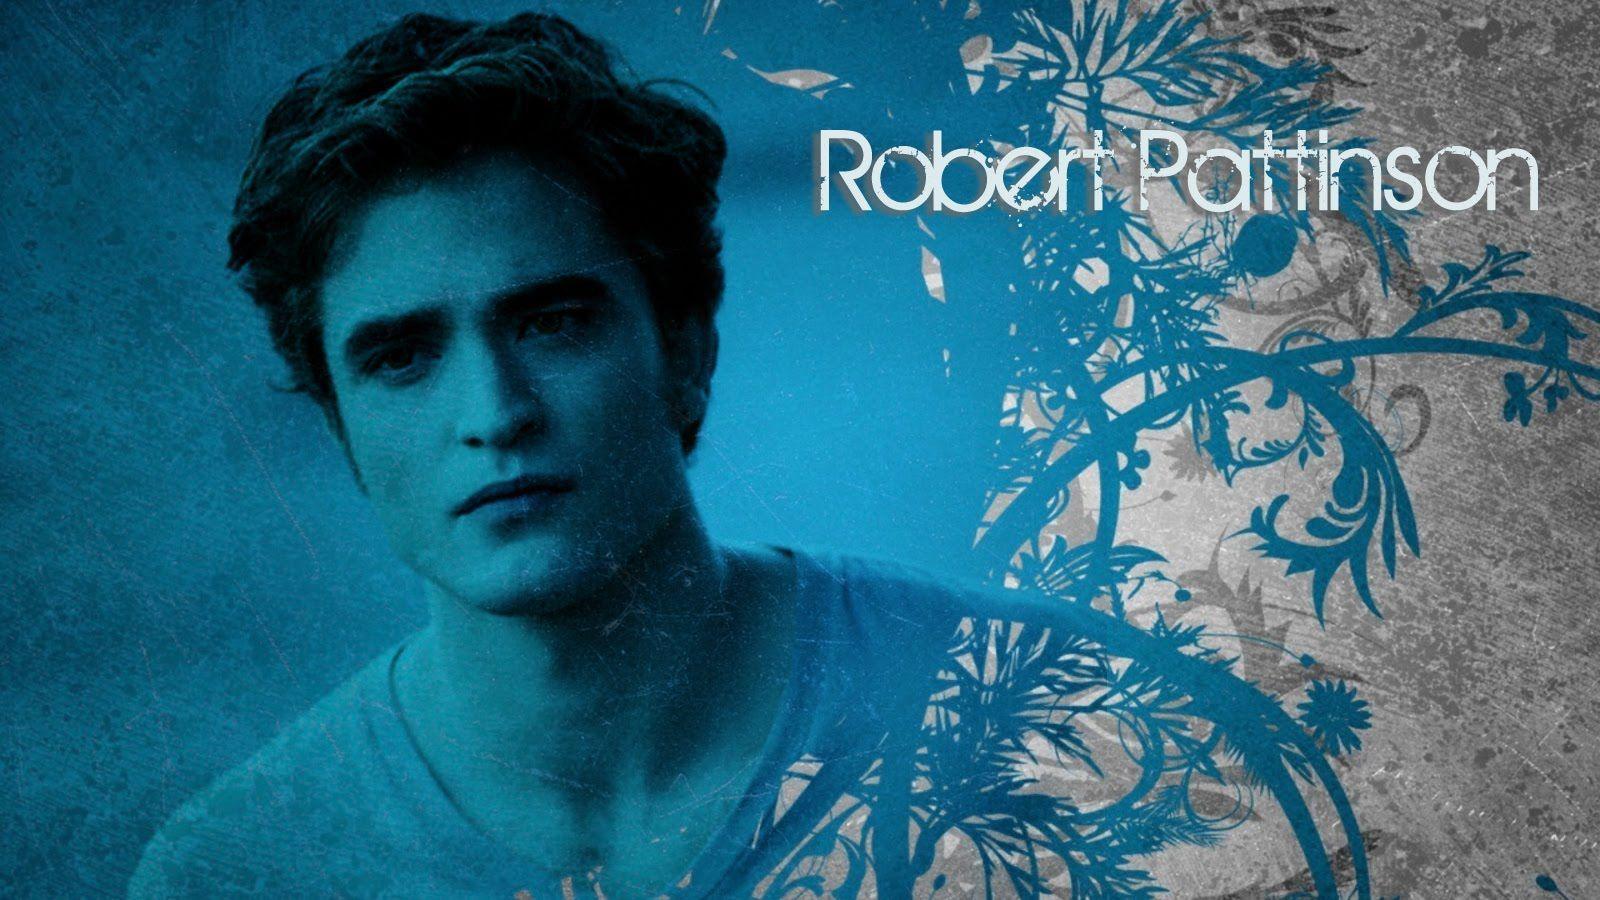 Robert Pattinson Desktop Wallpaper: Edward Cullen The Unbuttoned